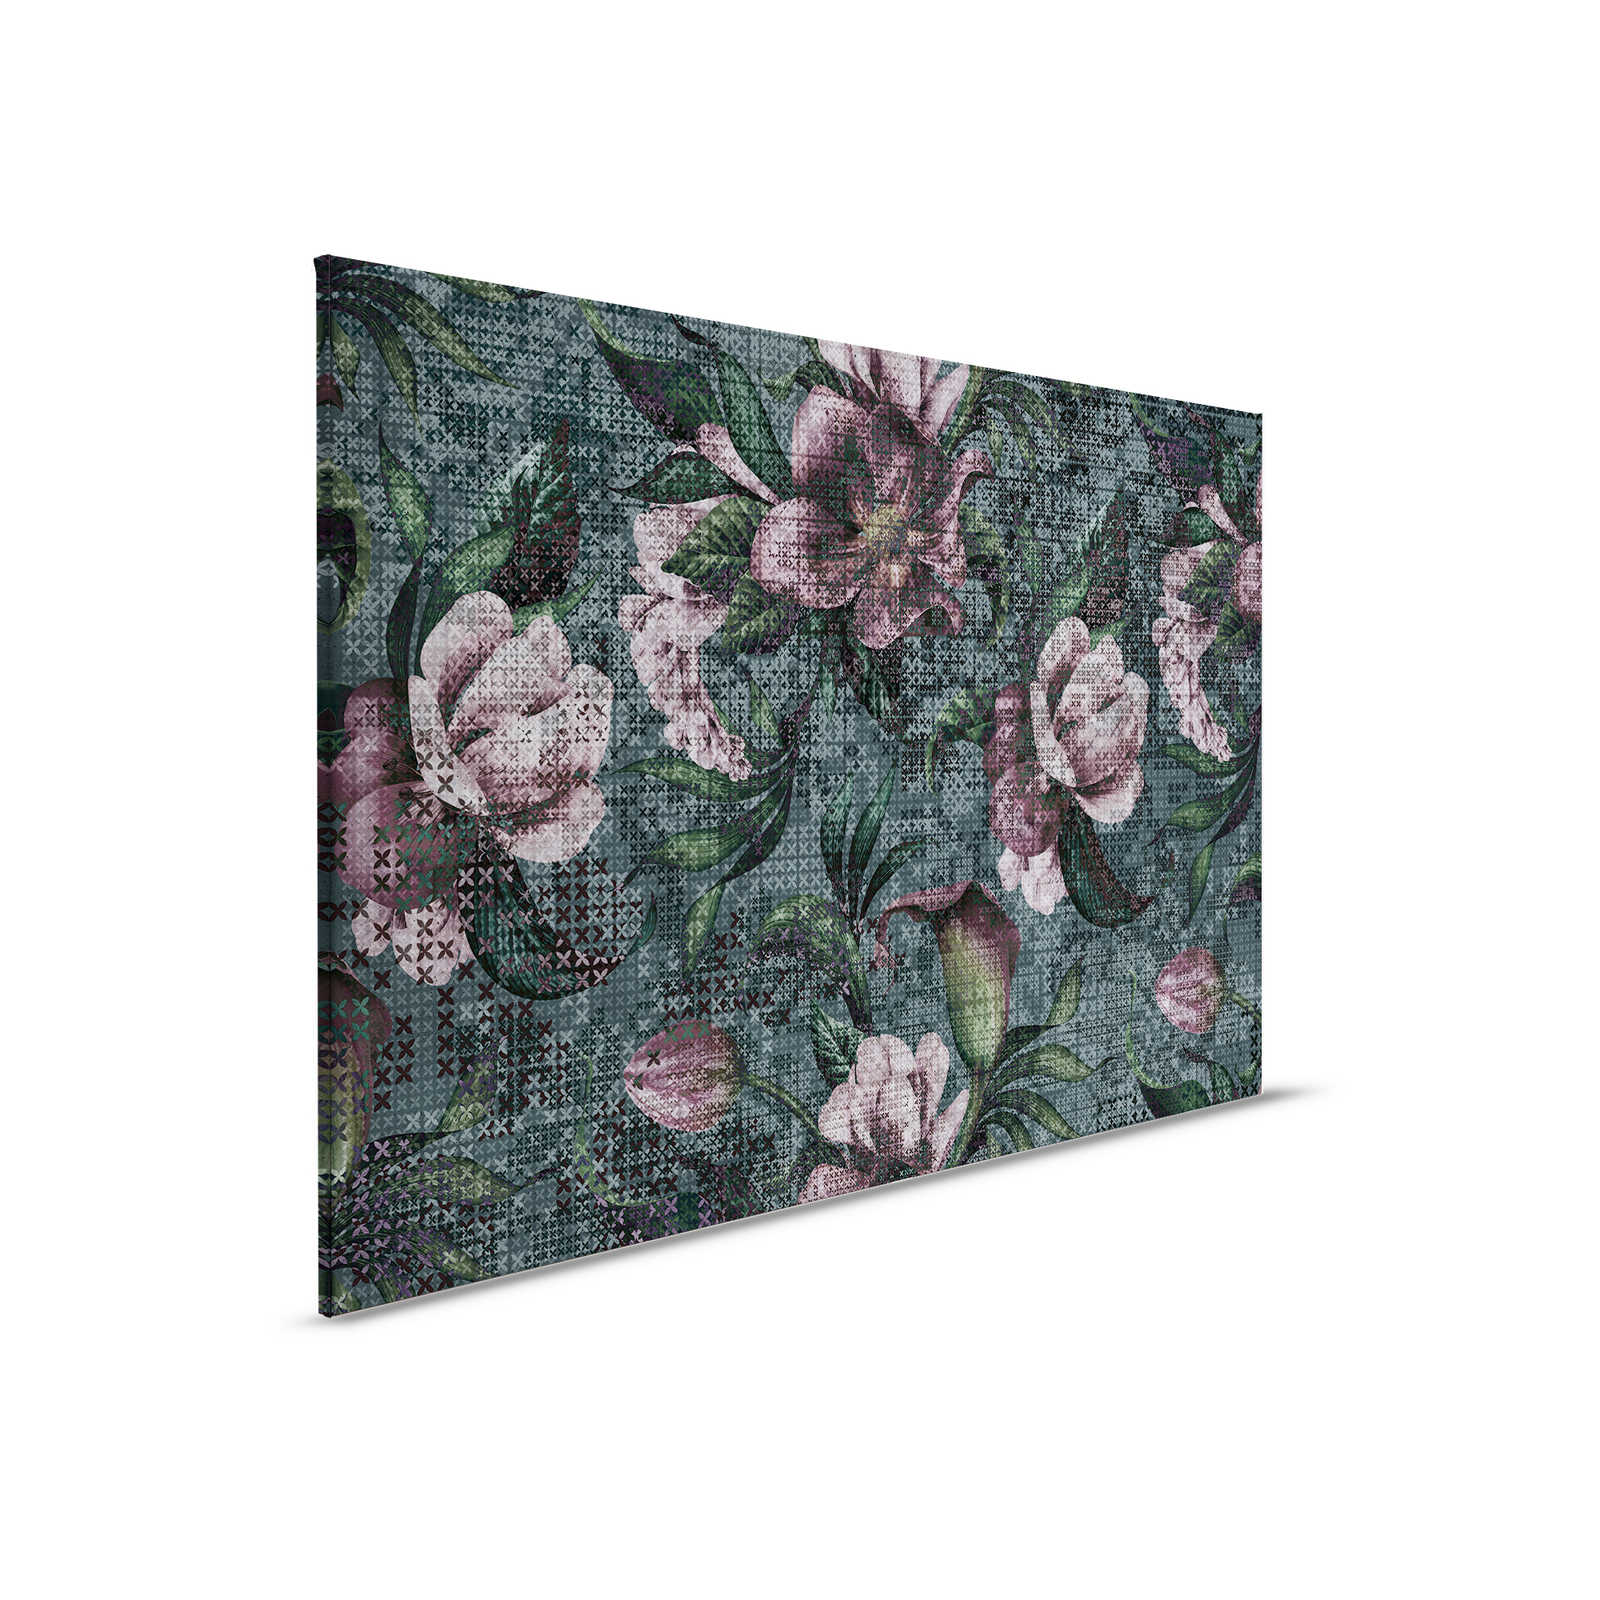 Flowers Canvas Painting Pixel Design - 0.90 m x 0.60 m
